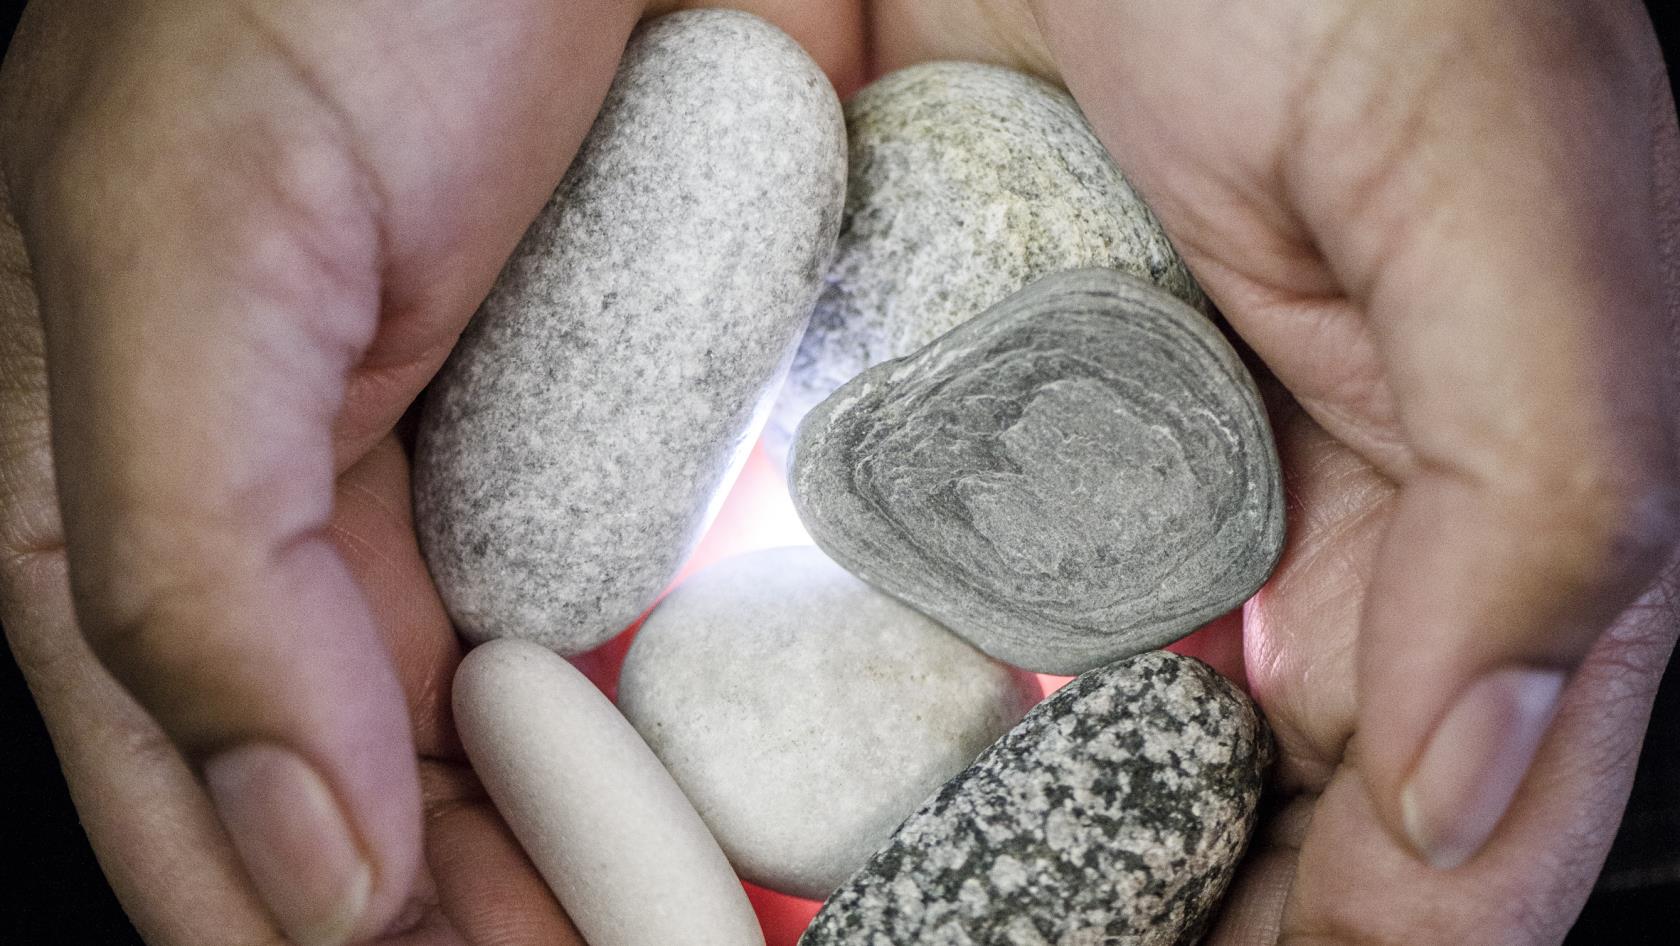 Närbild på en person som håller fram några stenar i handflatorna.